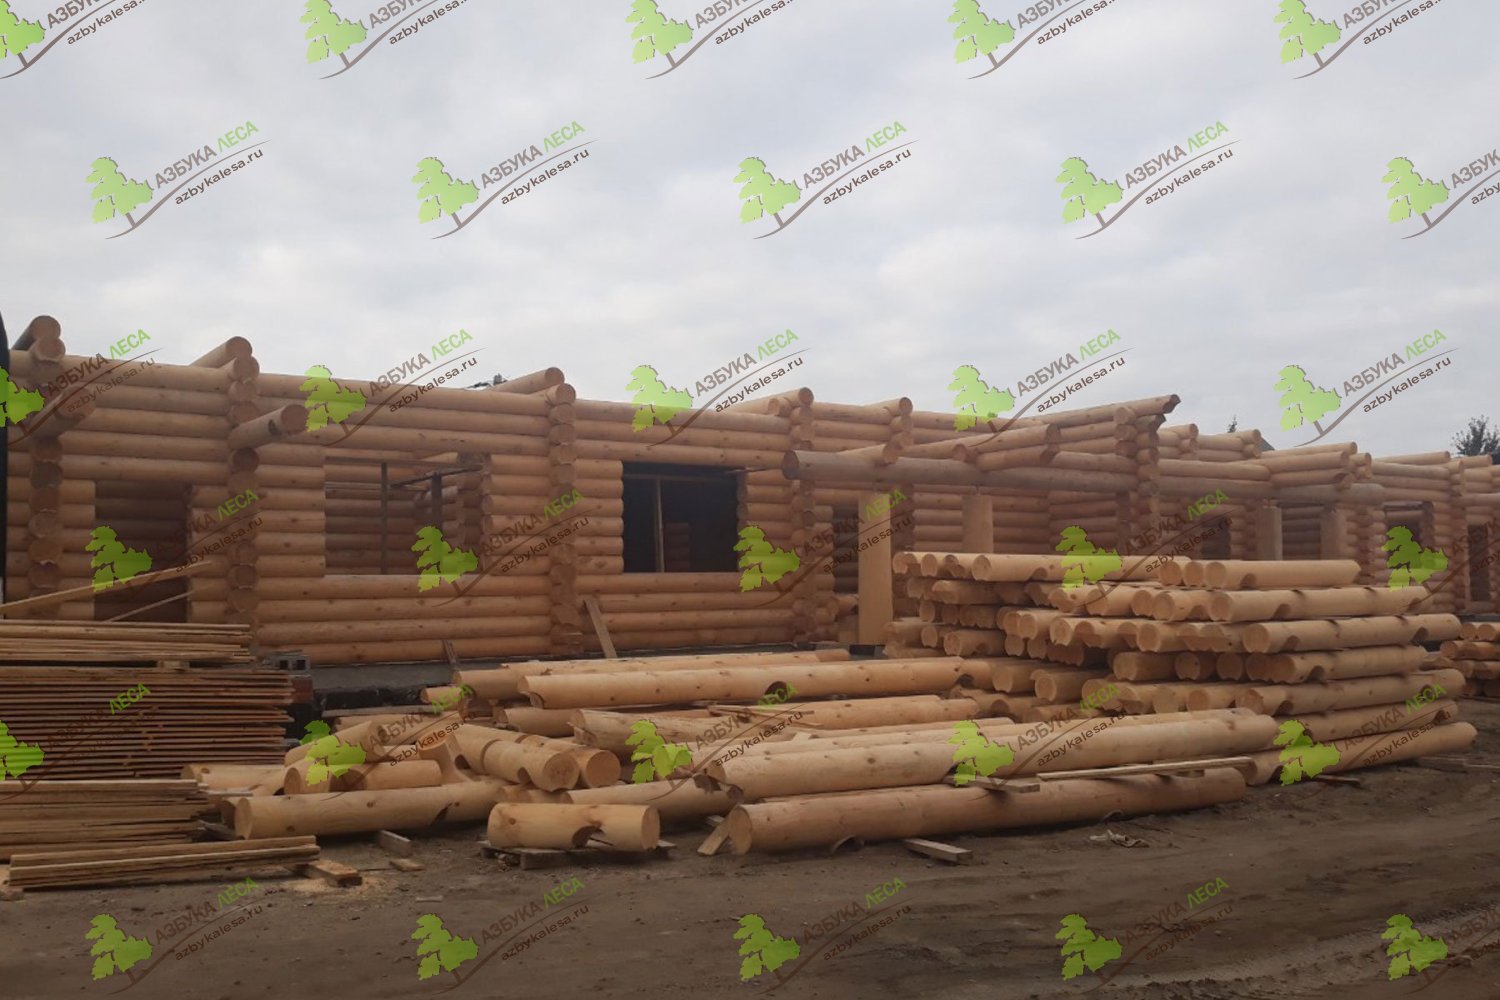 Строительство деревянных домов из бревна